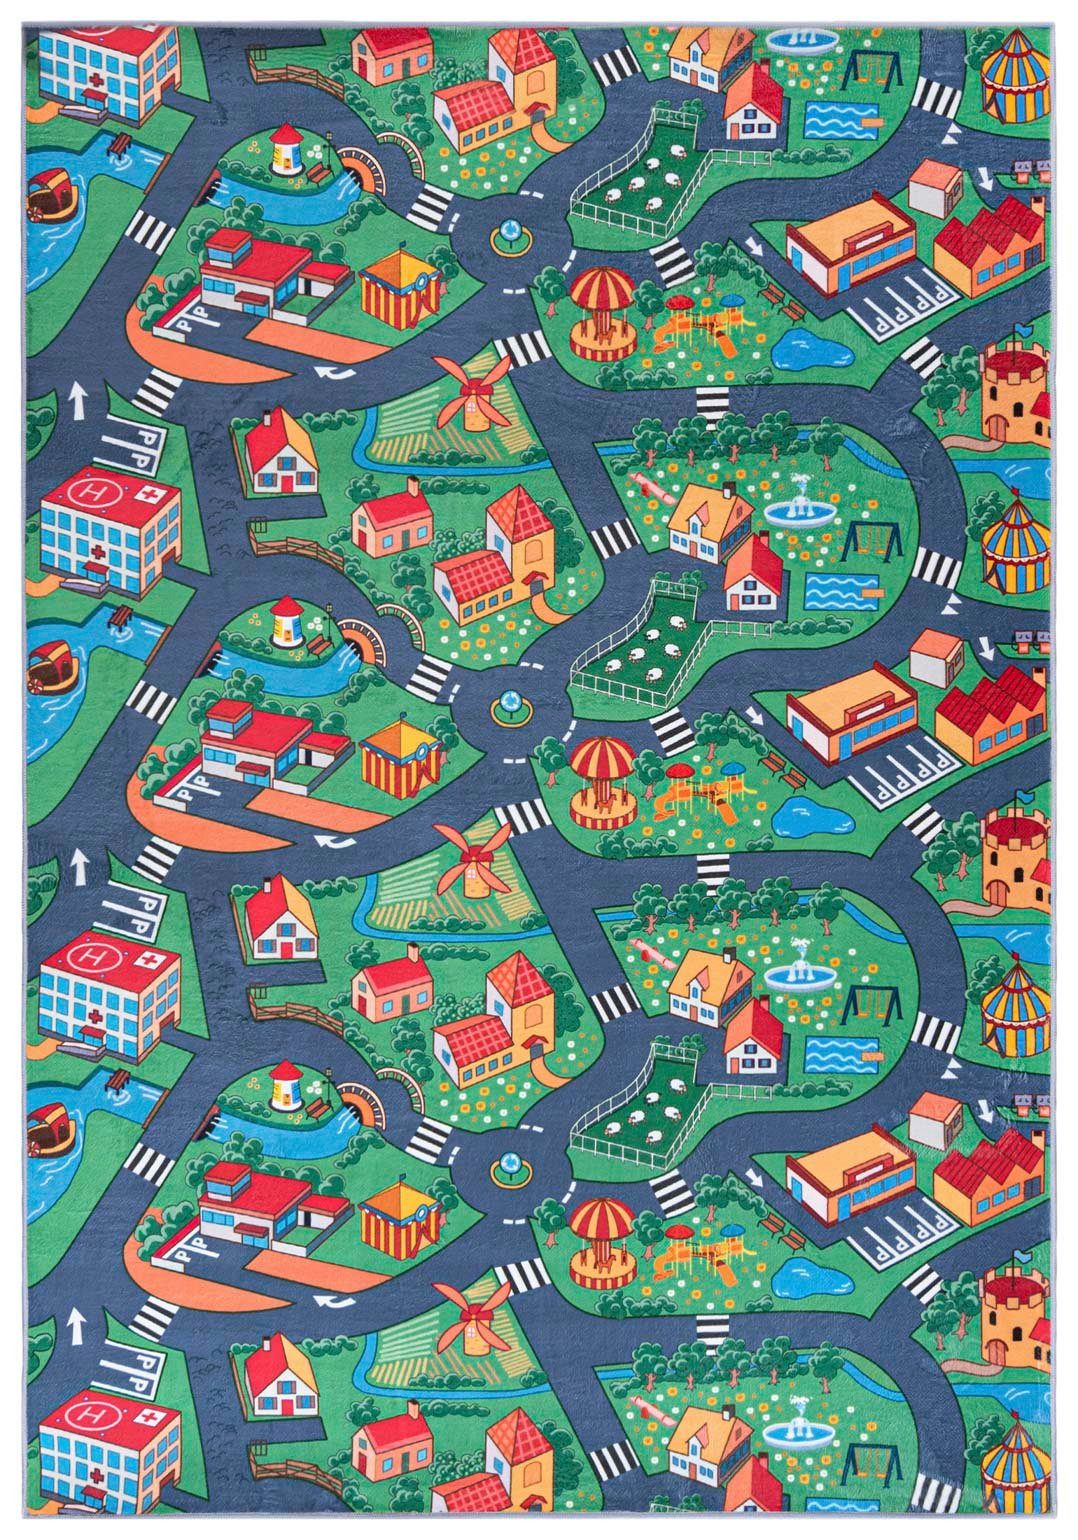 Kinderteppich Kinderteppich Spiel Teppich Kinderzimmerteppich Straße Grün Grau, Mazovia, 200 x 300 cm, Fußbodenheizung, Allergiker geeignet, Rutschfest